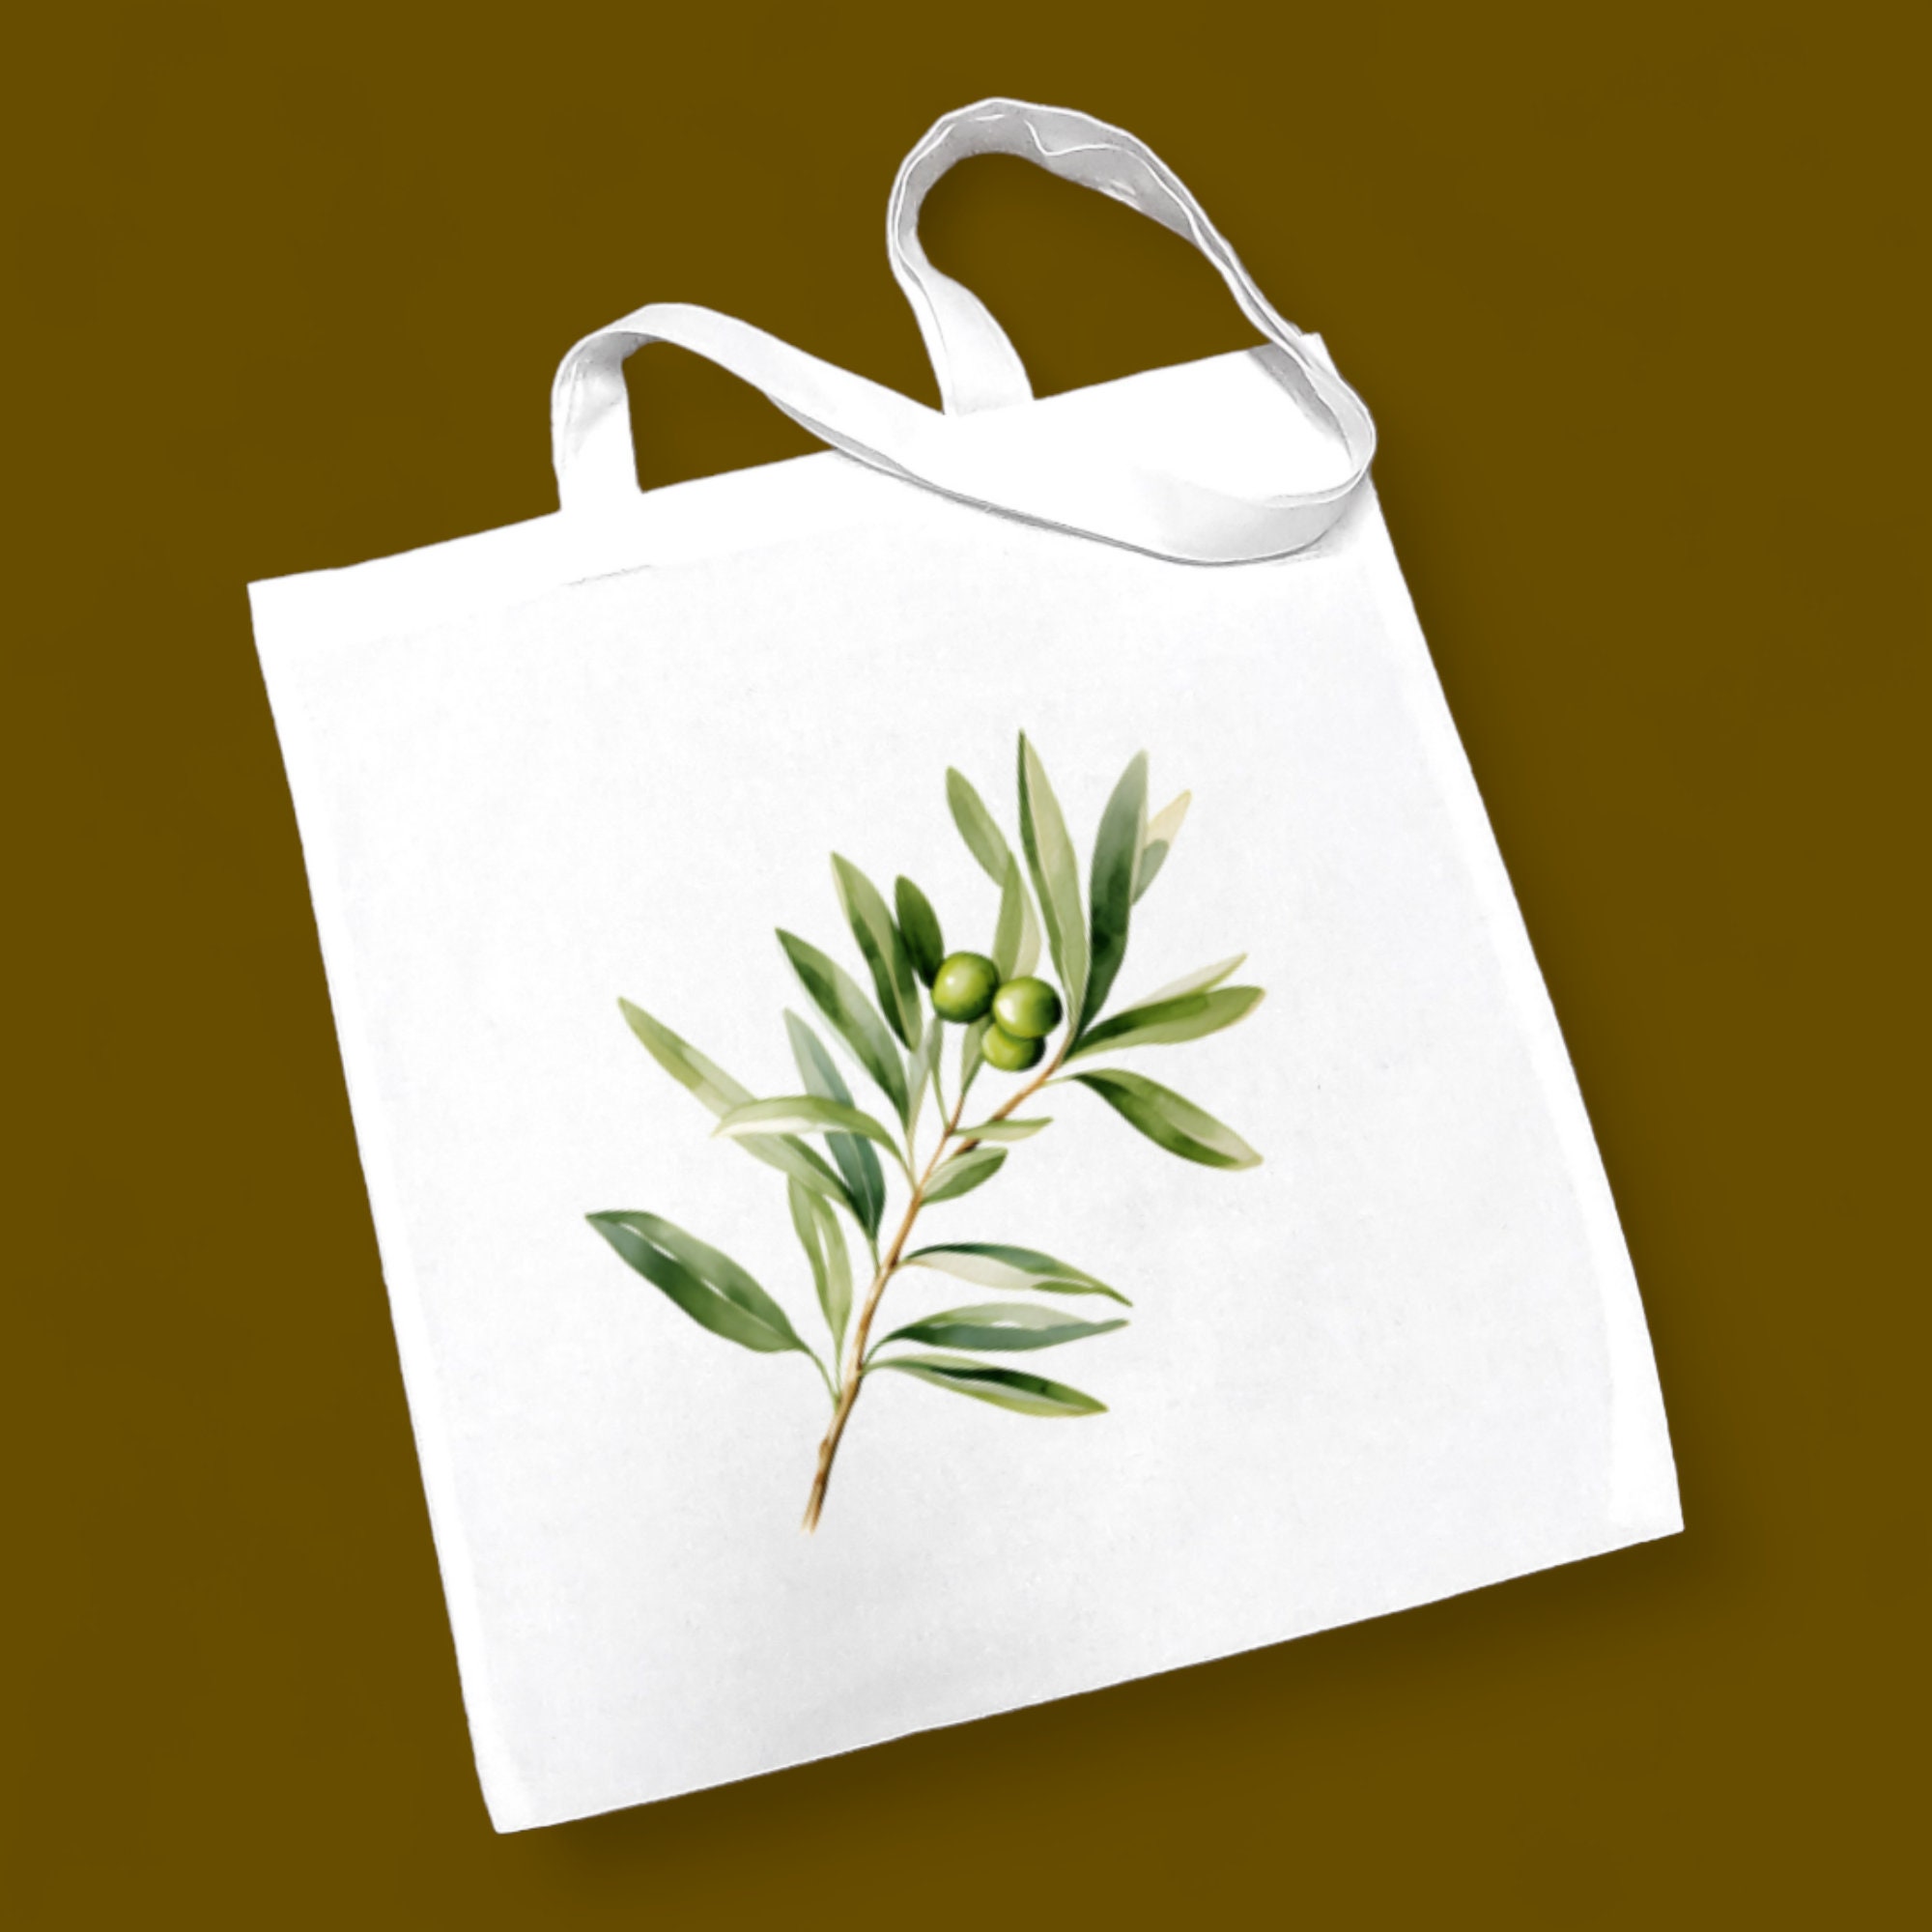 Stofftasche, Stoffbeutel, Einkaufstasche, Tasche, Geschenk zum Geburtstag, in Weiß oder Beige, "Olive, Olivenzweig"